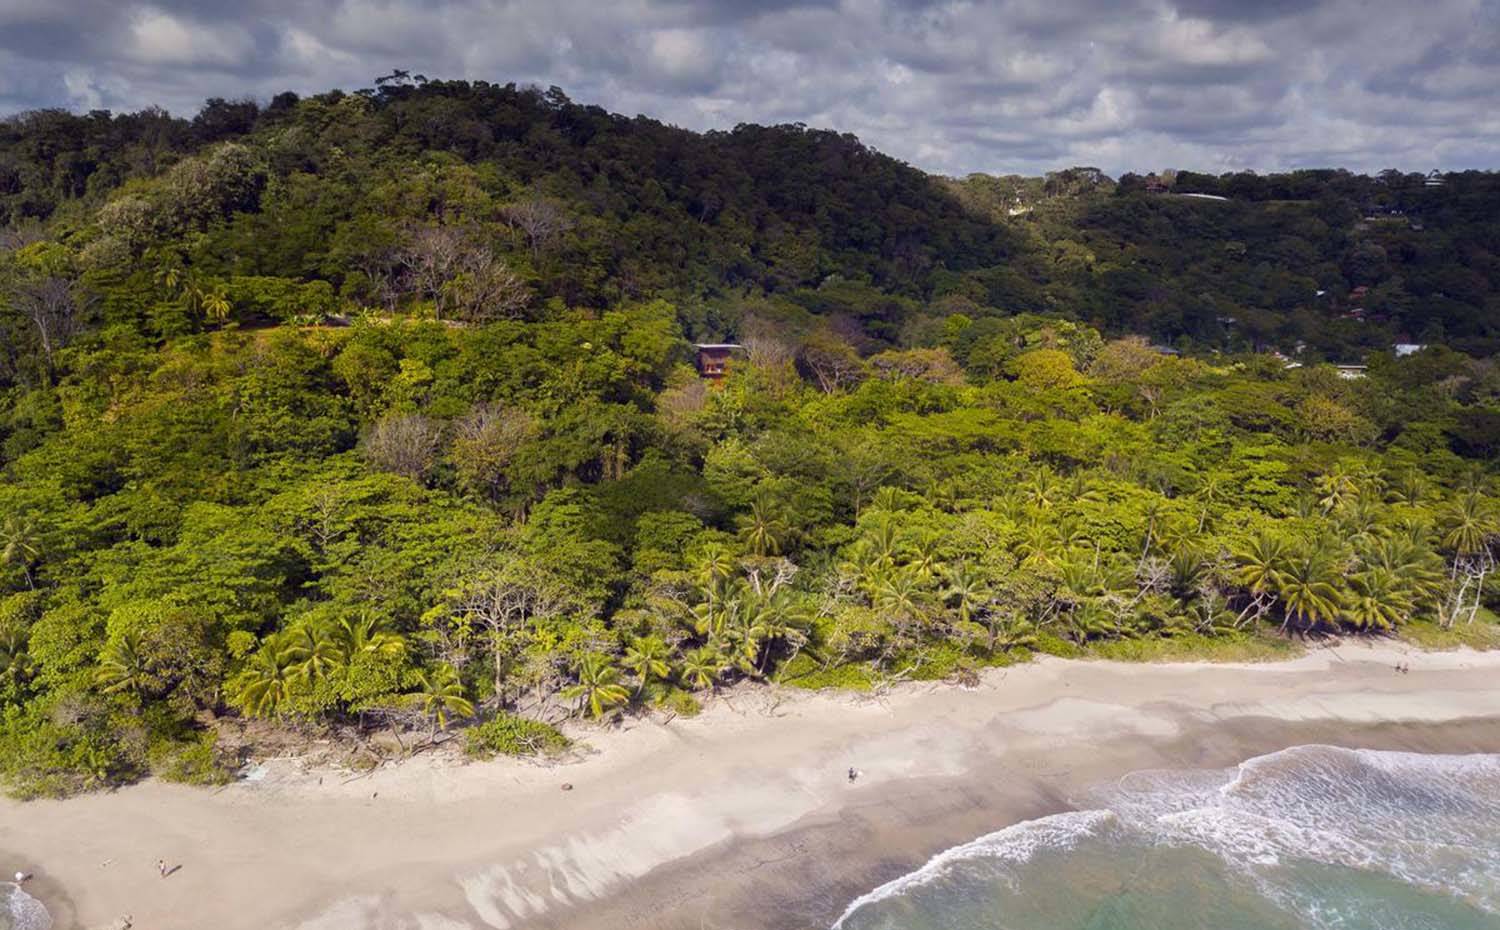 Vista del entorno natural donde se emplaza la casa, con la playa a muy pocos metros. La vivienda está ubicada a pocos metros de playa Hermosa, en la provincia costarricense de Guanacaste, en medio de una rica vegetación tropical.